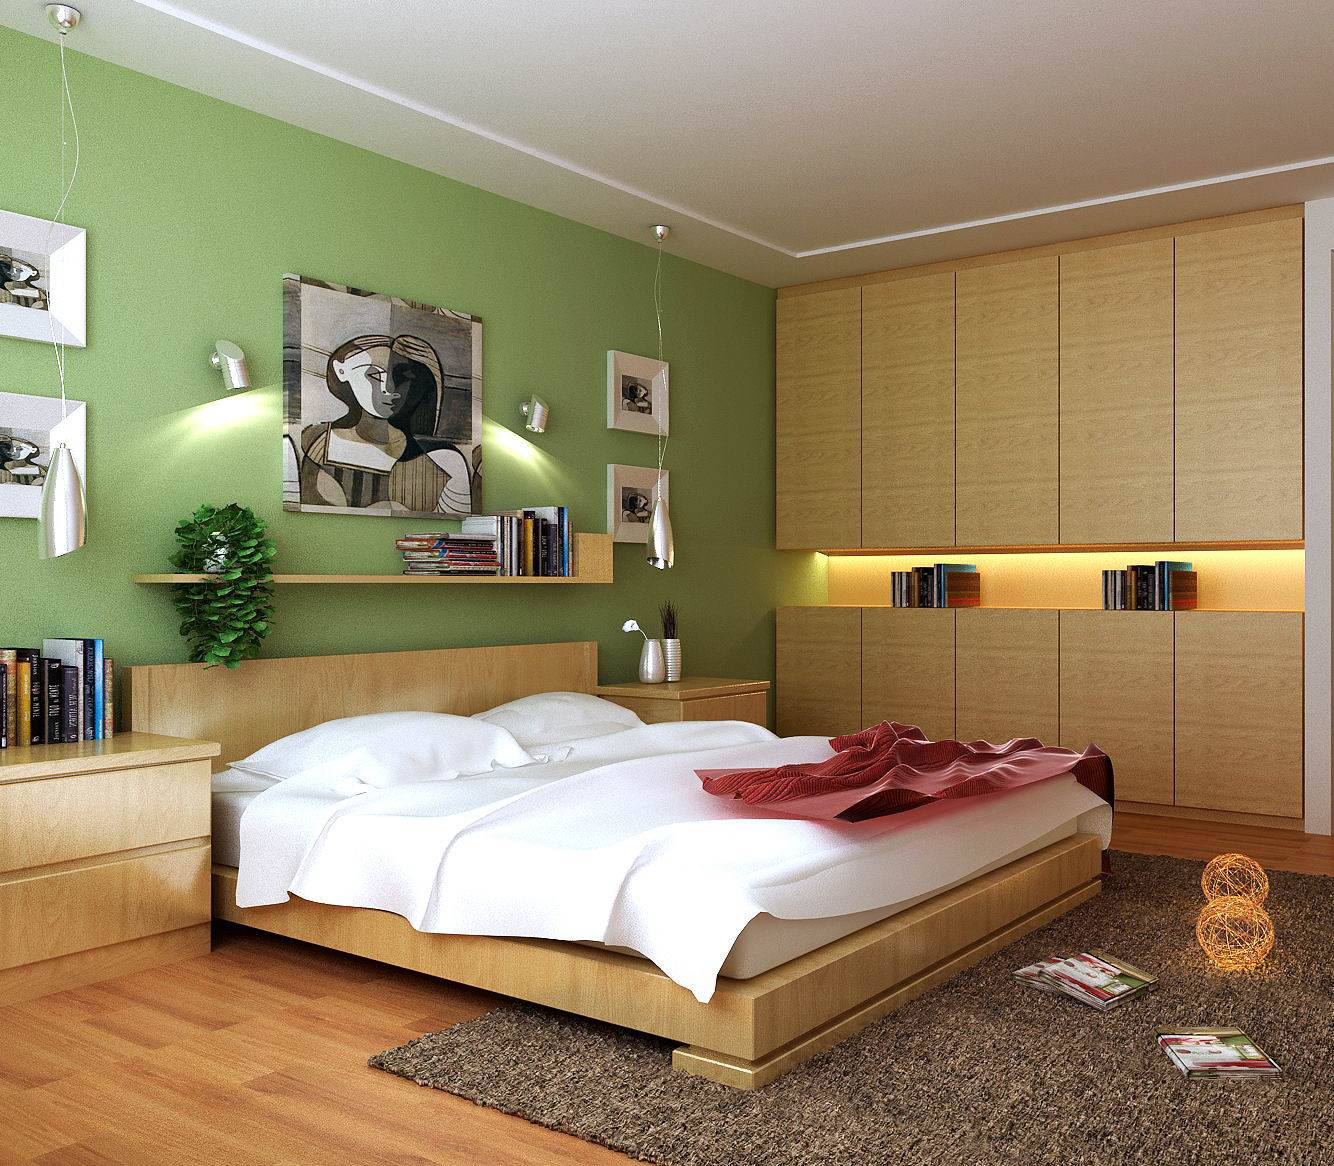 三居 欧式 田园 简约 白领 卧室图片来自实创装饰晶晶在163平欧式乡村风格设计的分享